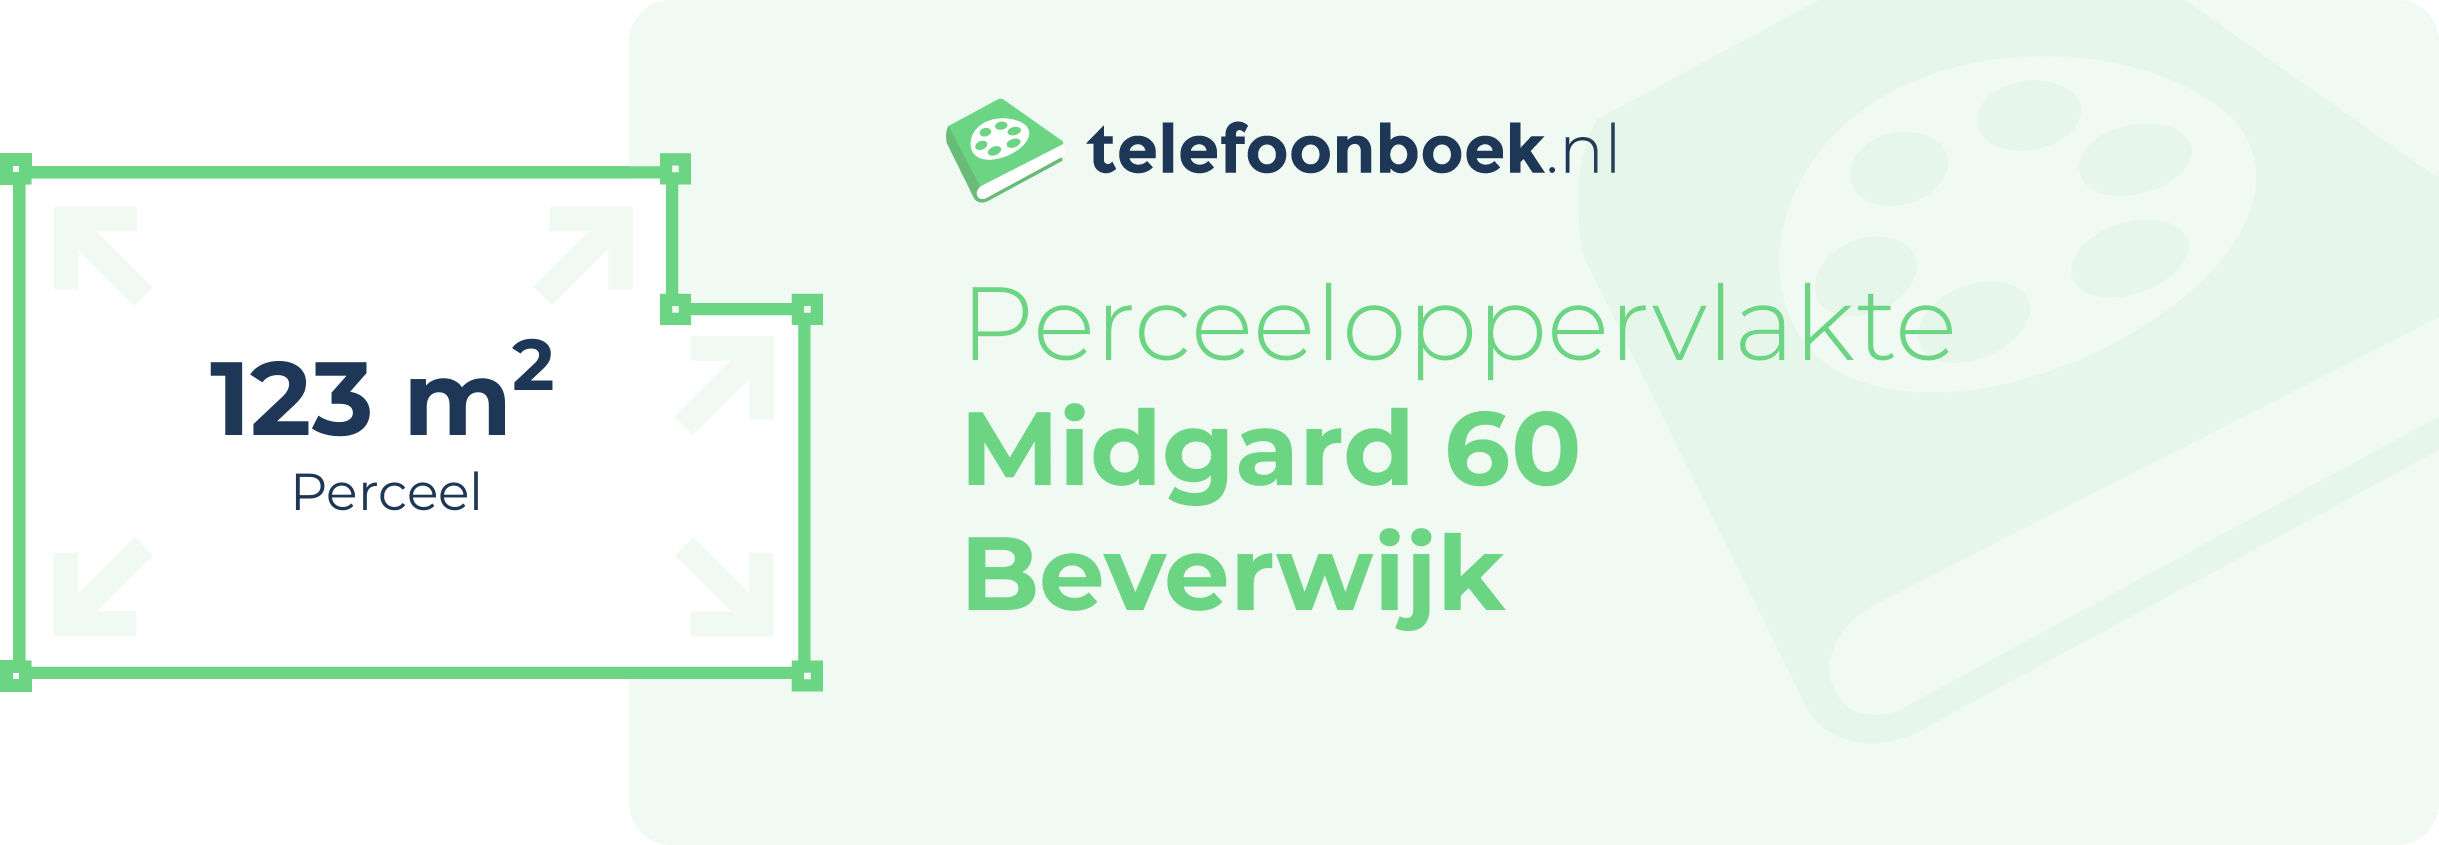 Perceeloppervlakte Midgard 60 Beverwijk